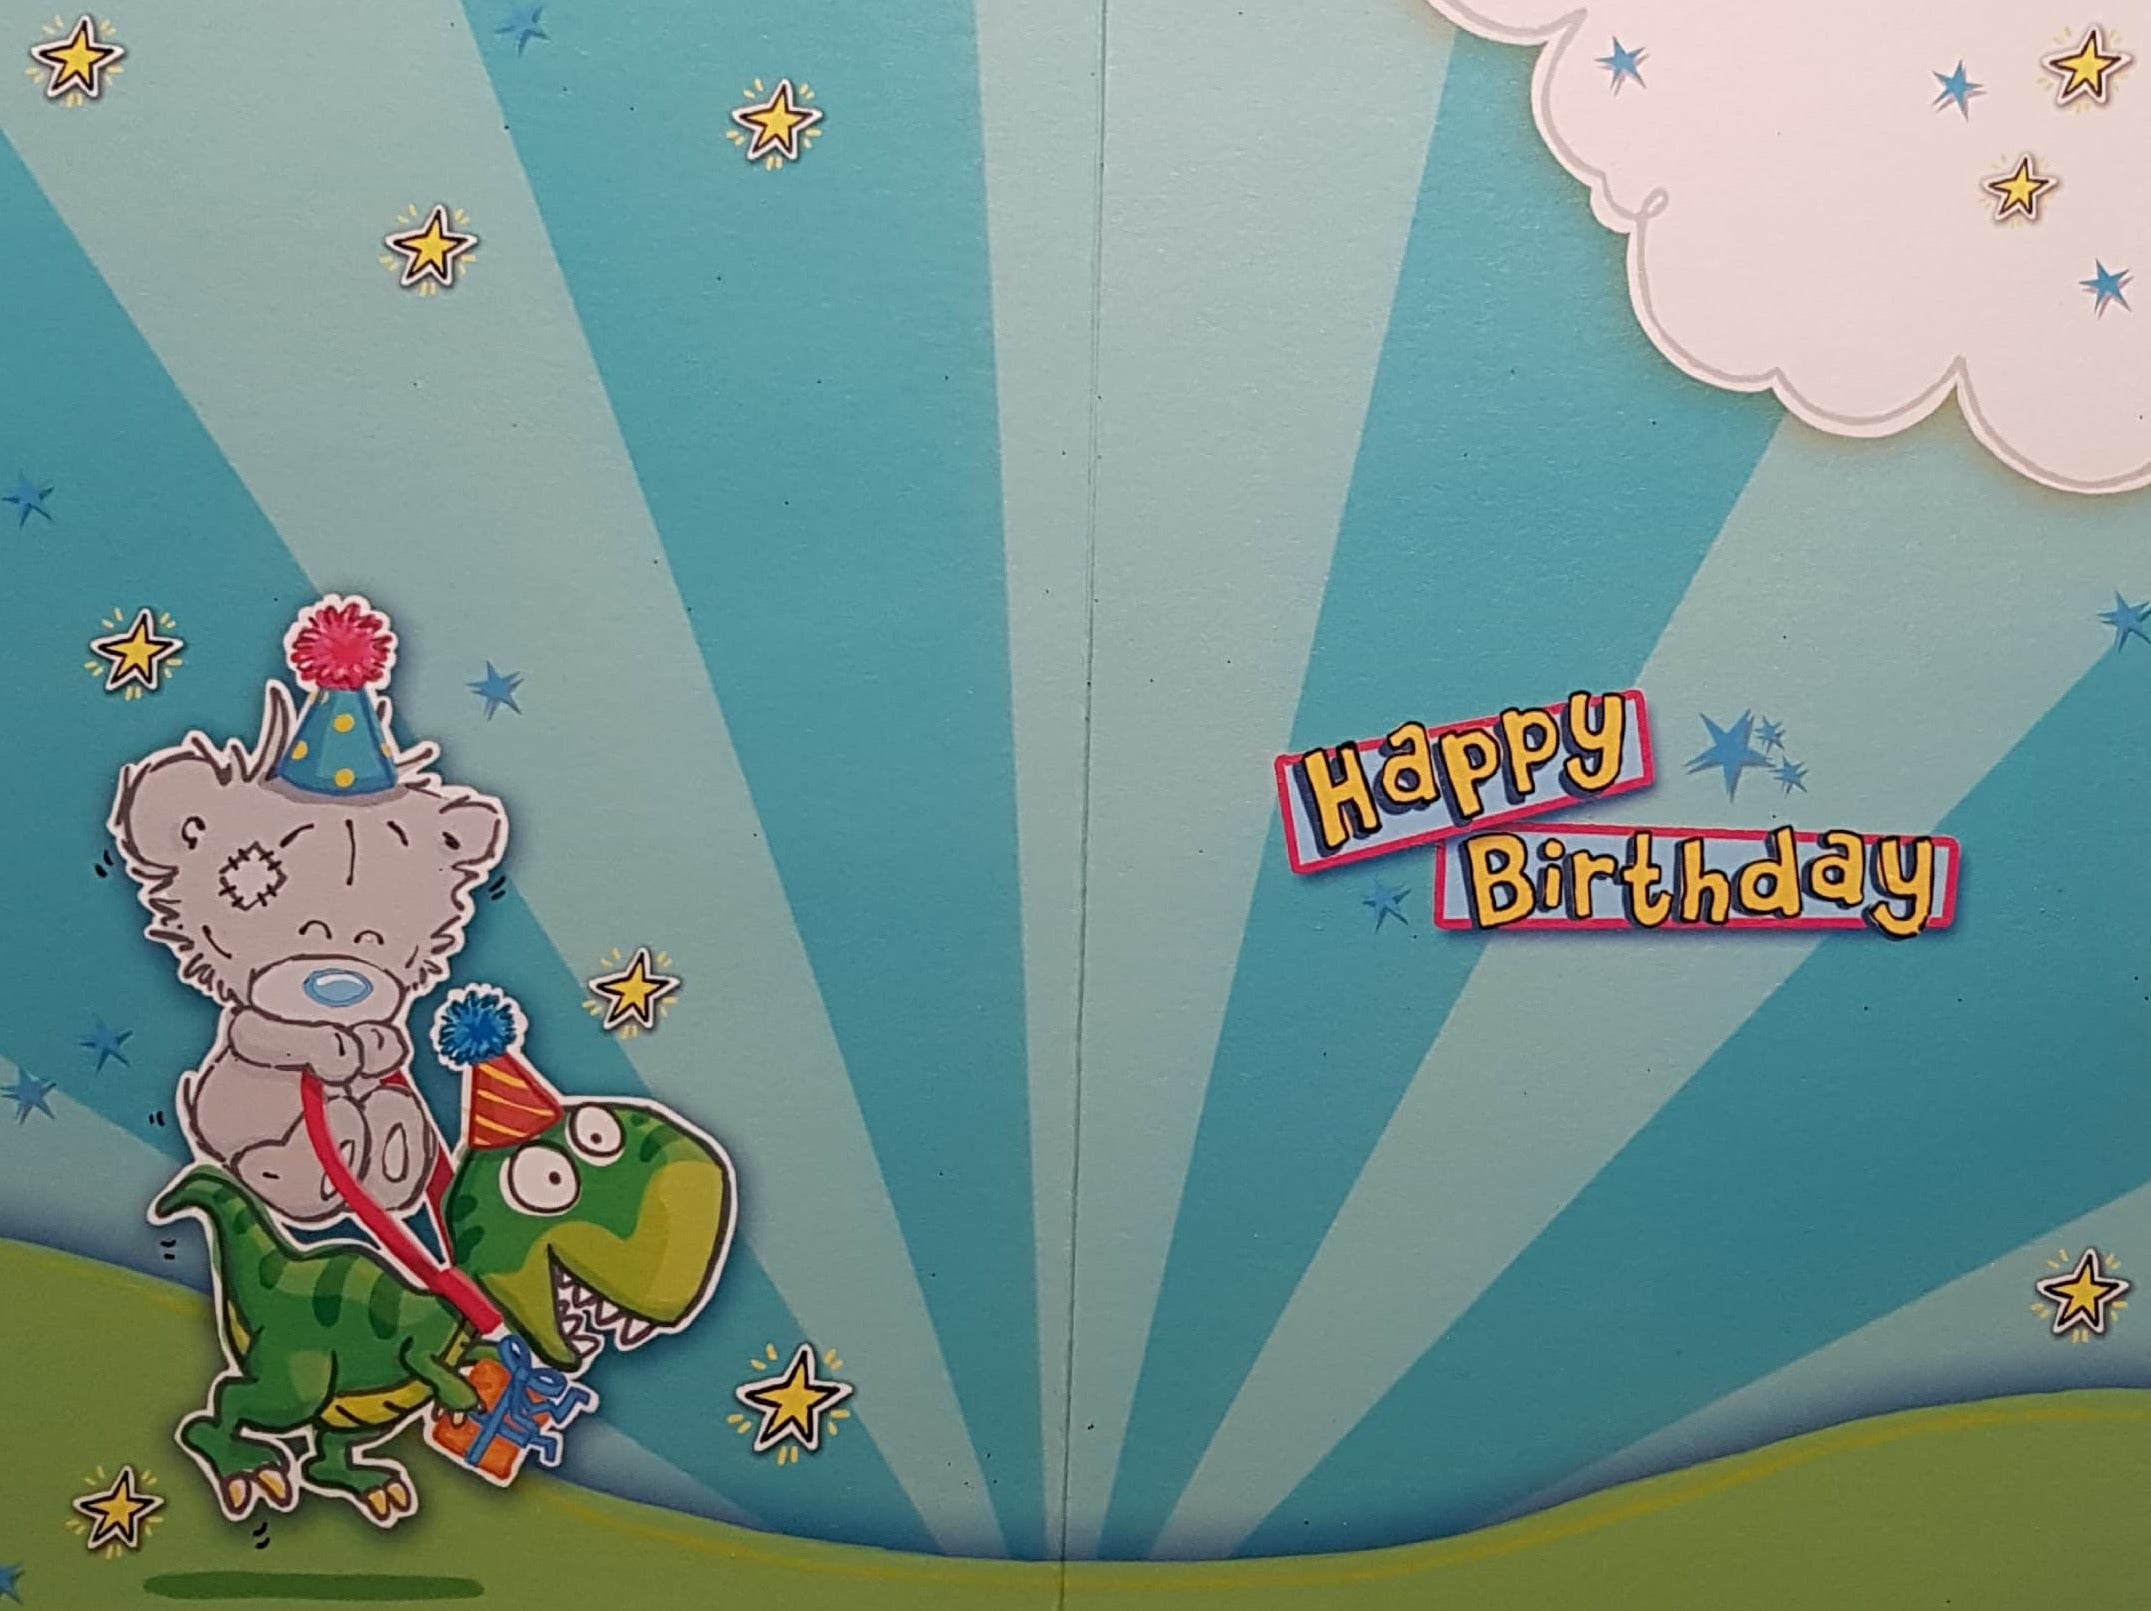 Age 5 Birthday Card - Teddy Riding On A Dinosaur Near Volcano